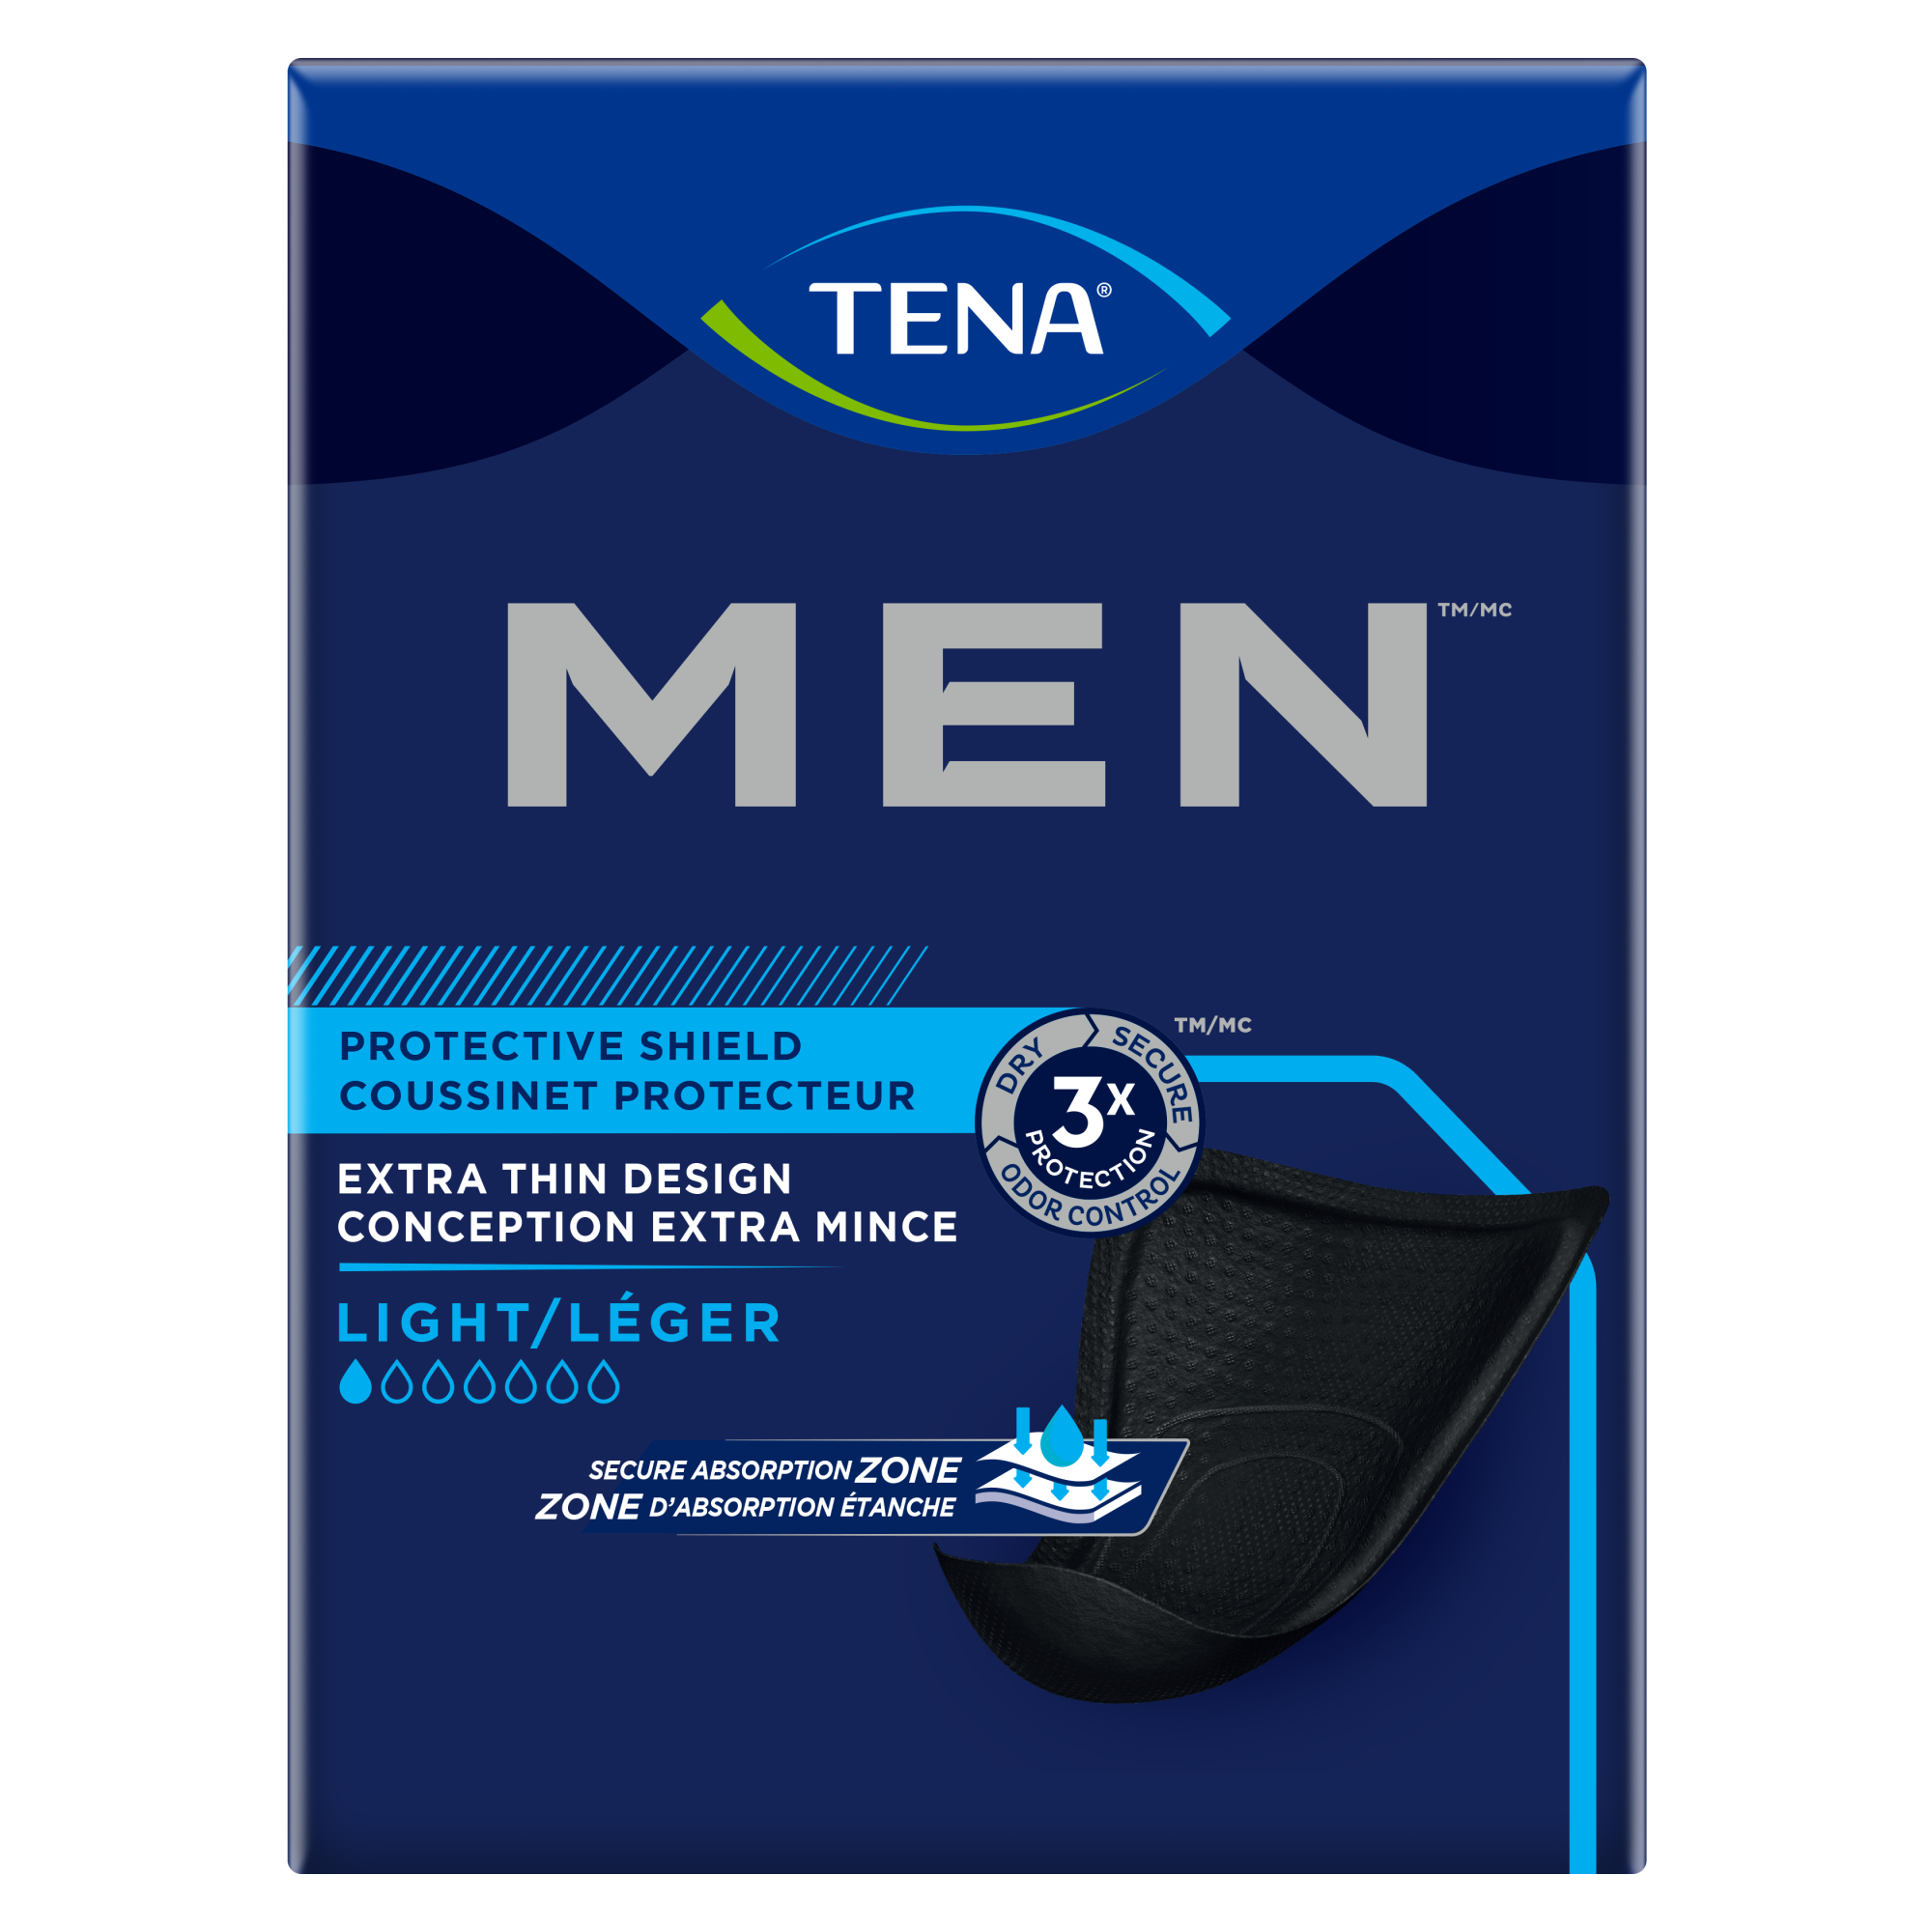 Coussinet protecteur à absorption légère TENA Men® | Coussinet d’incontinence